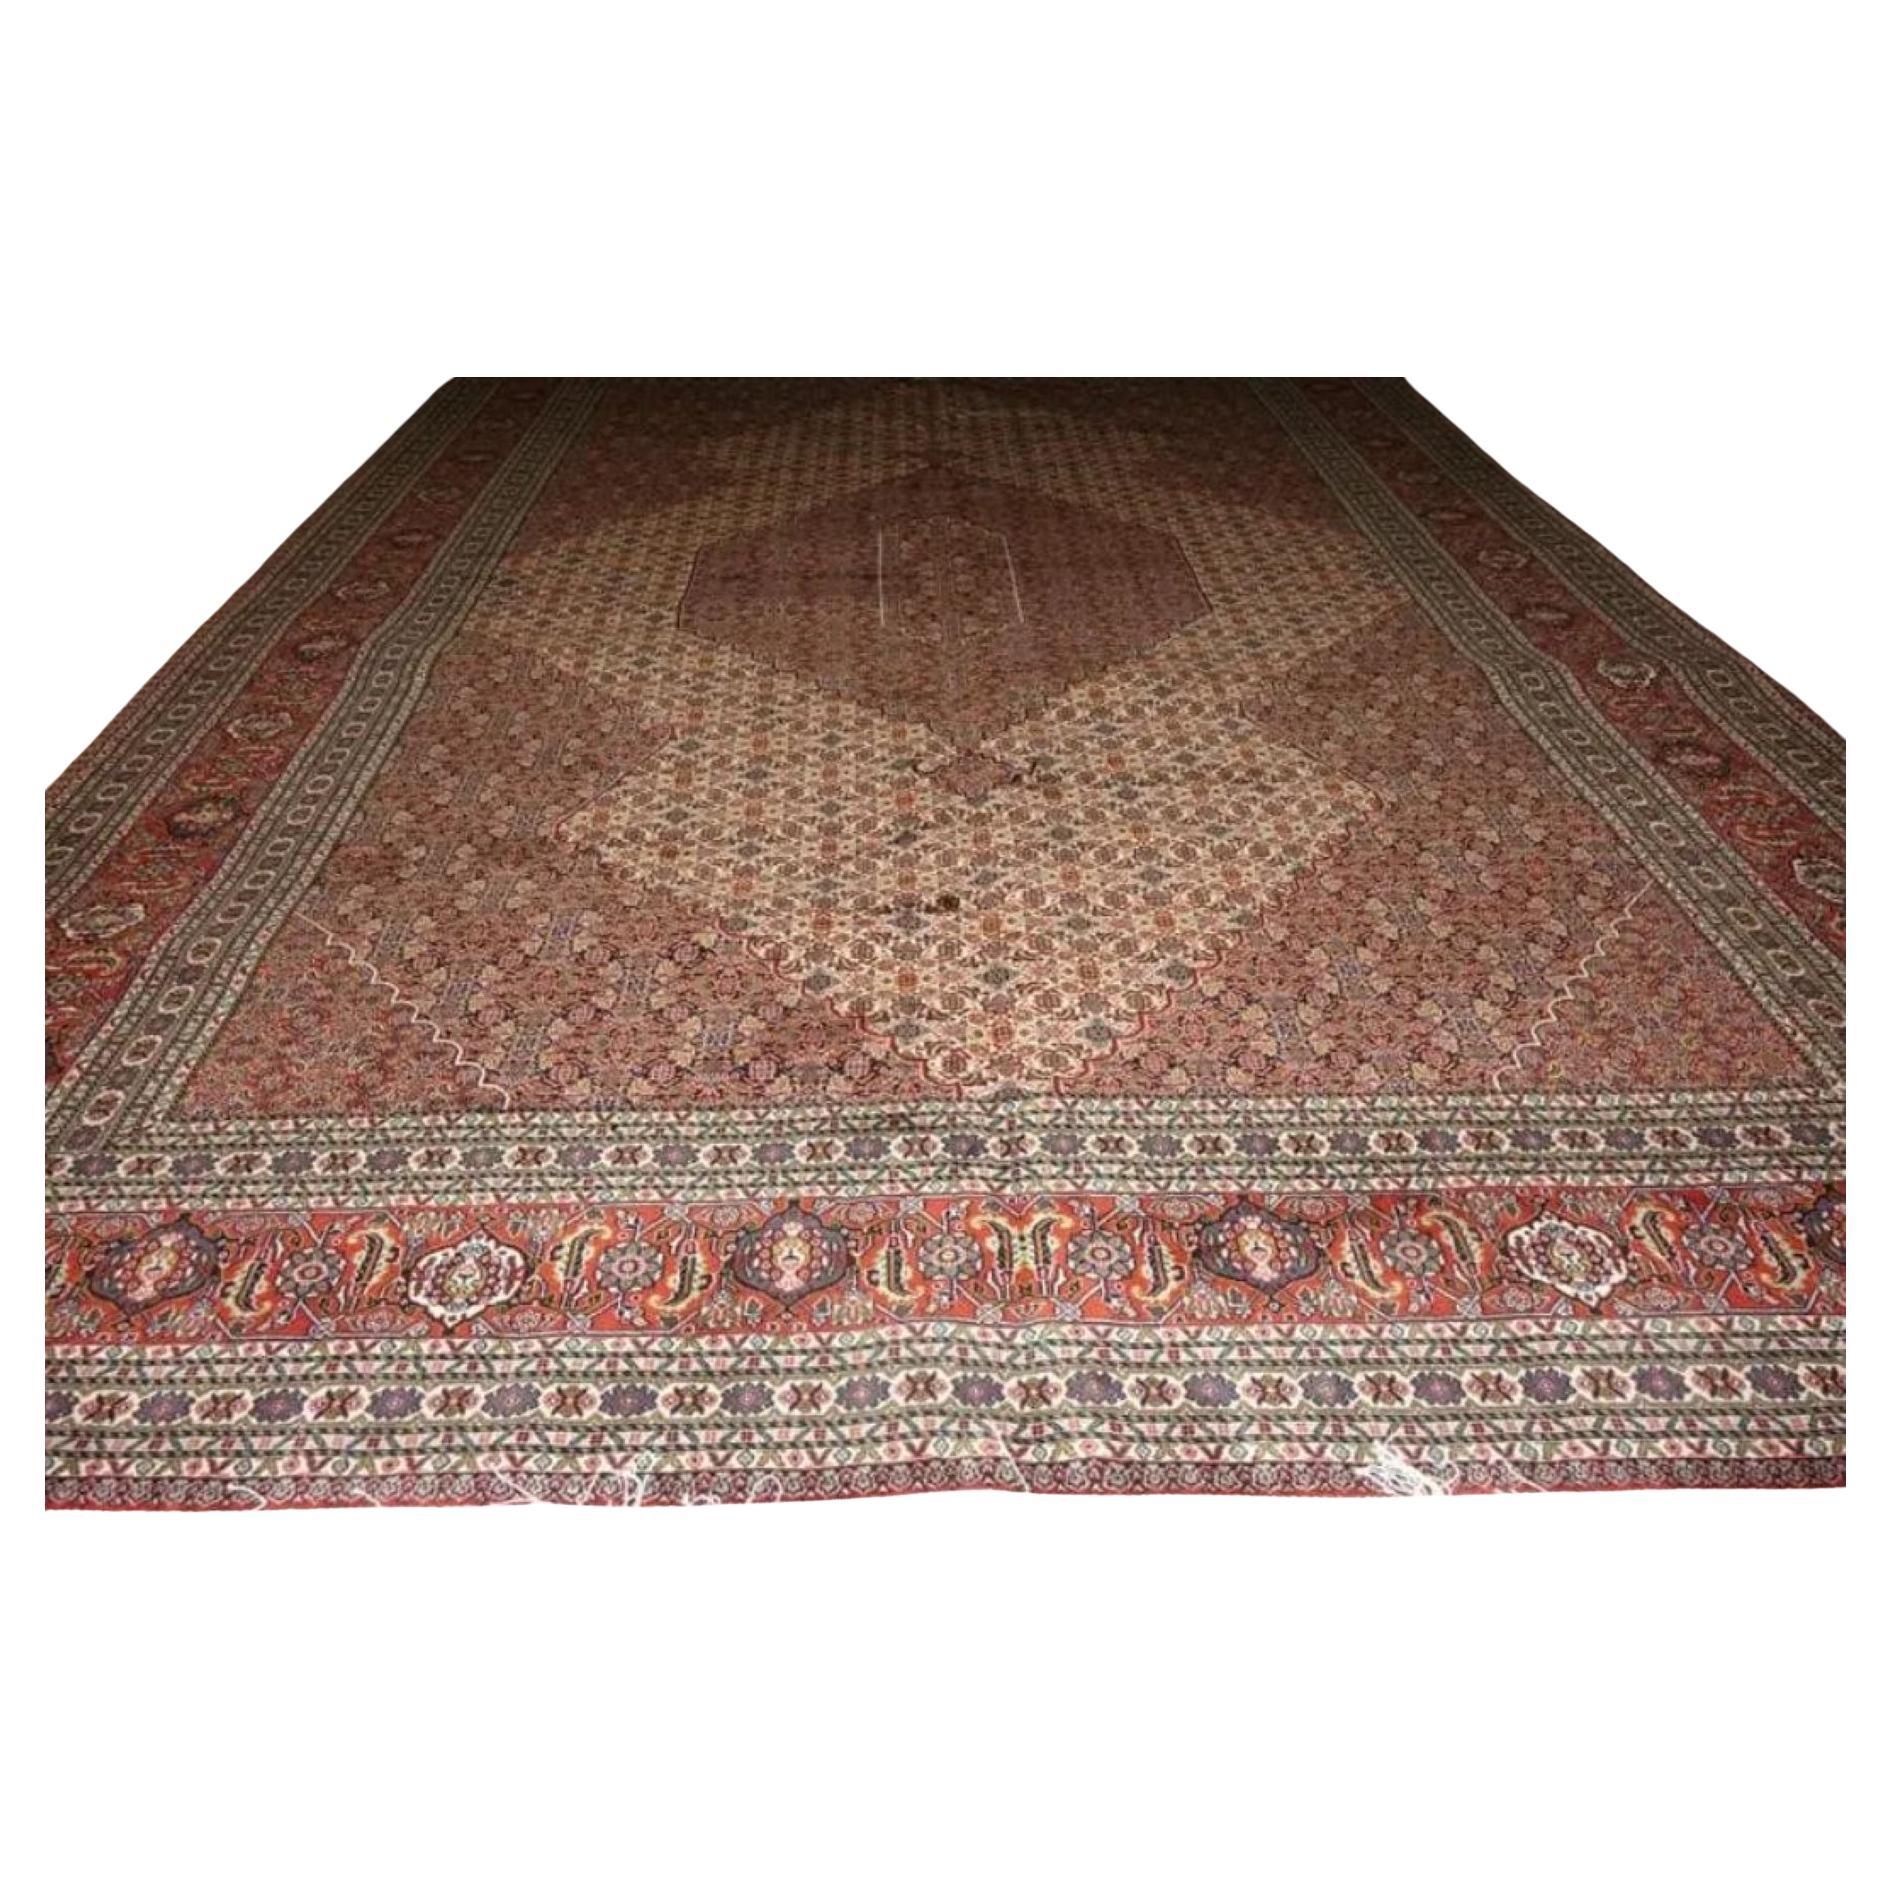 Très beau tapis persan Tabriz en soie et laine - 8.3' x 11.5'.